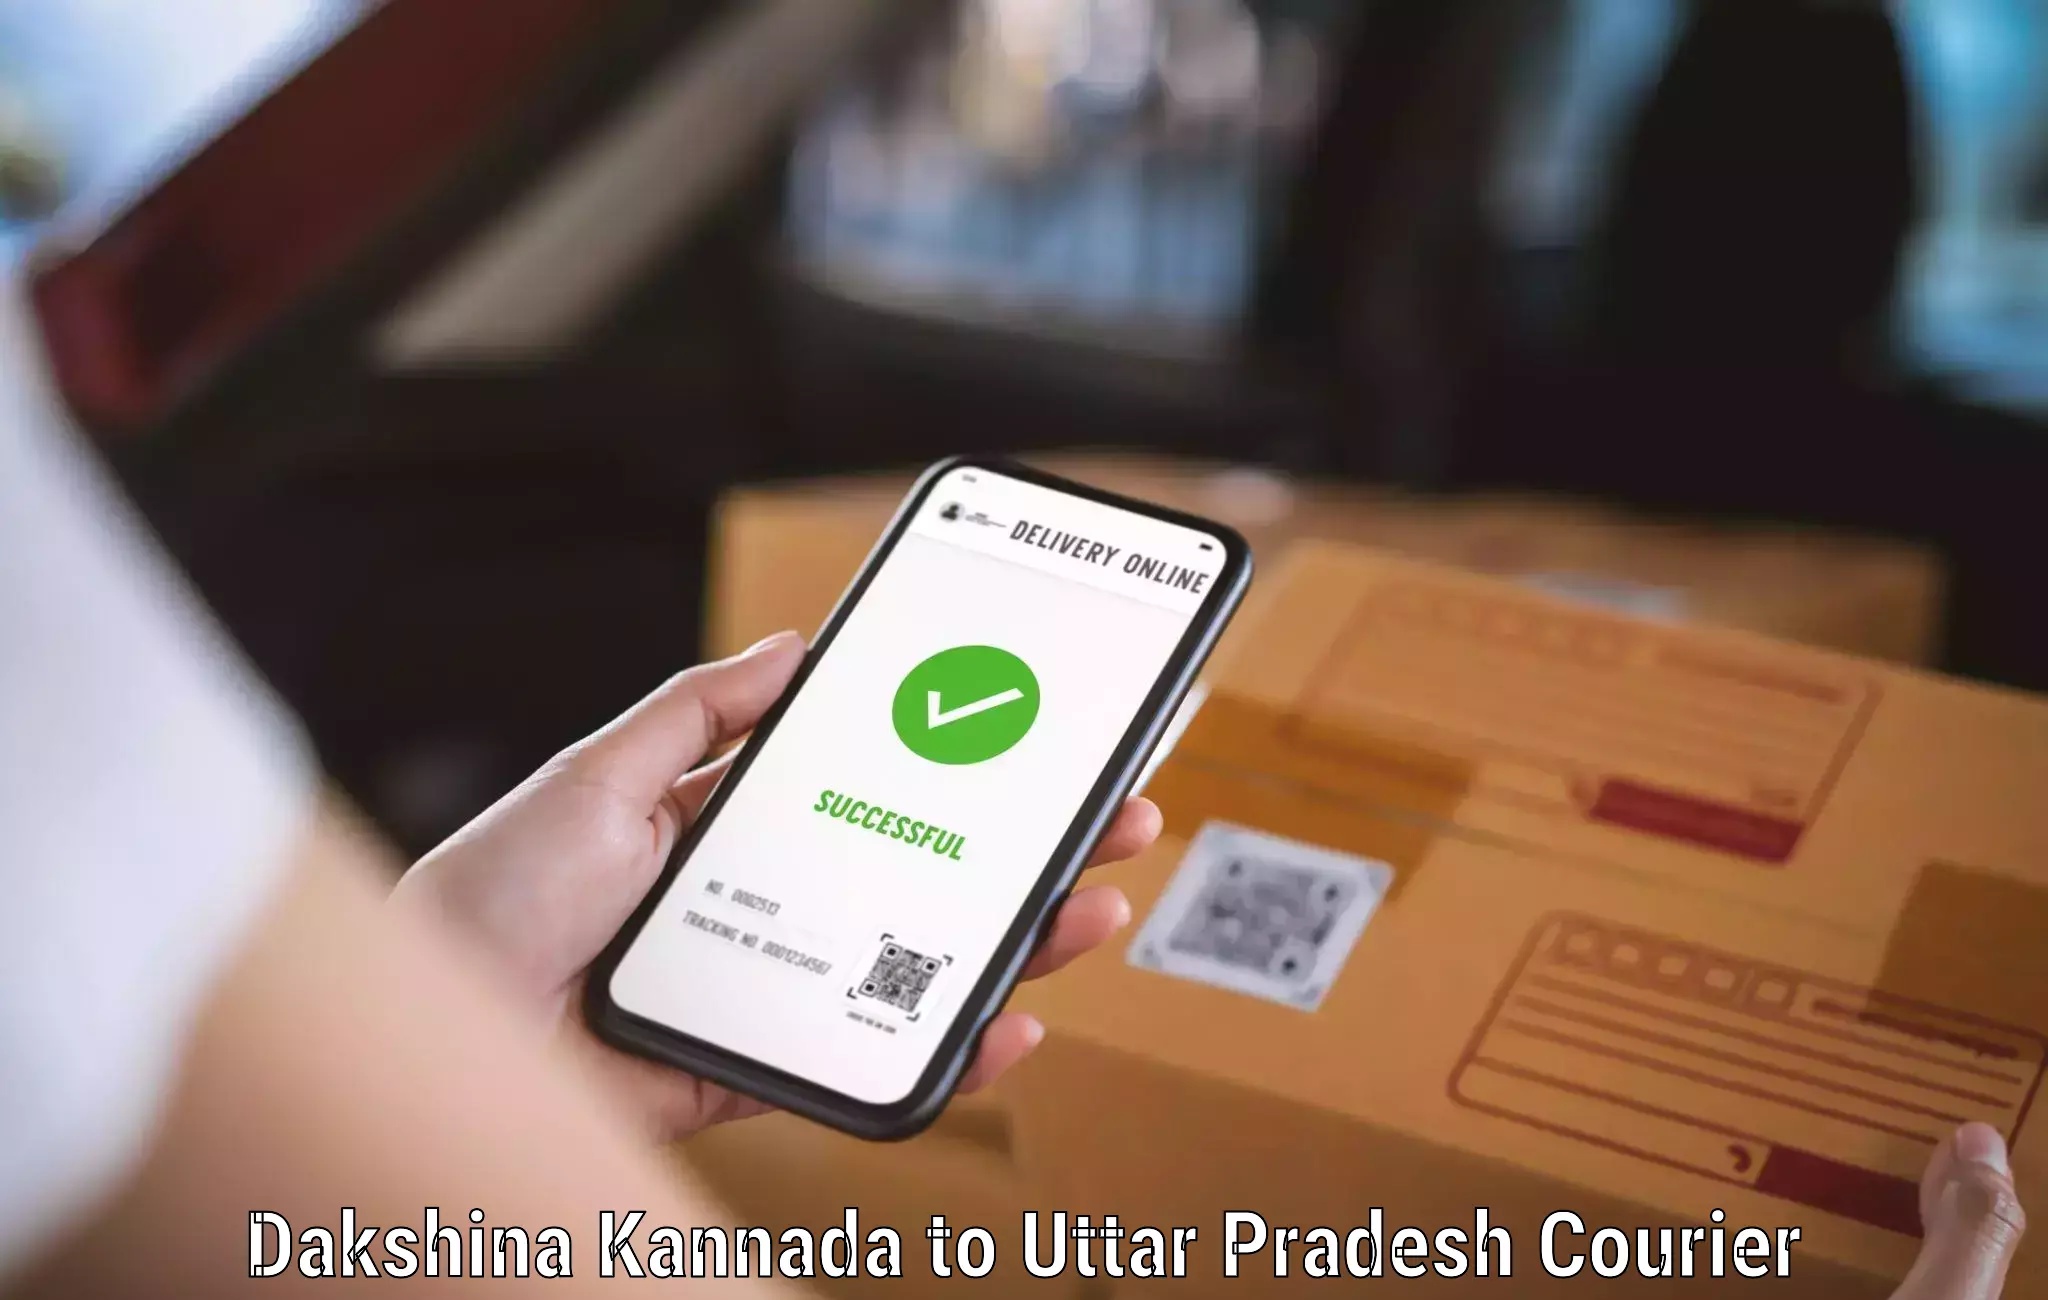 Efficient parcel service Dakshina Kannada to Gauri Bazar